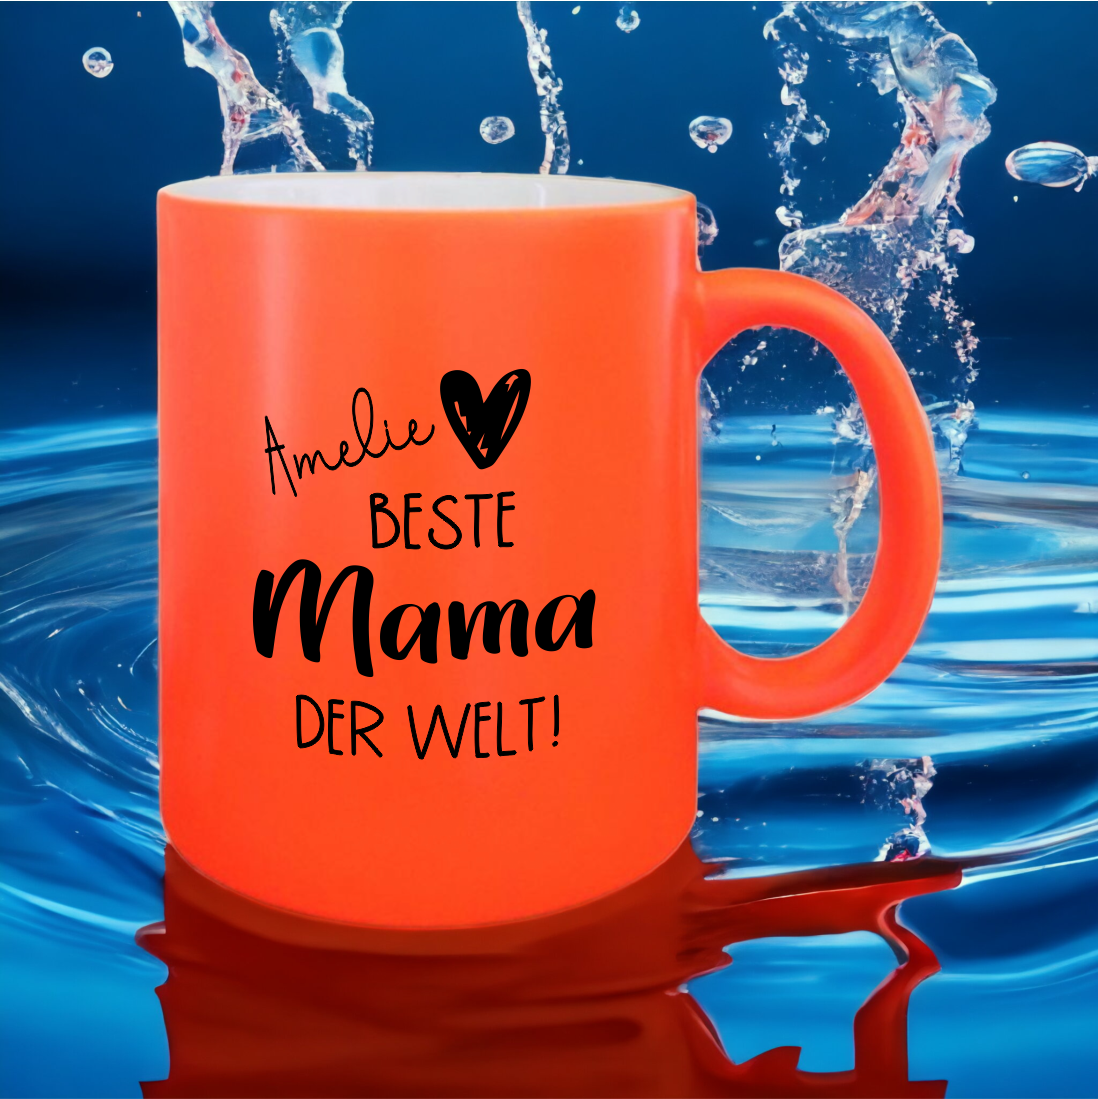 NEON Tasse "Beste Mama der Welt", orange mit Wunschnamen